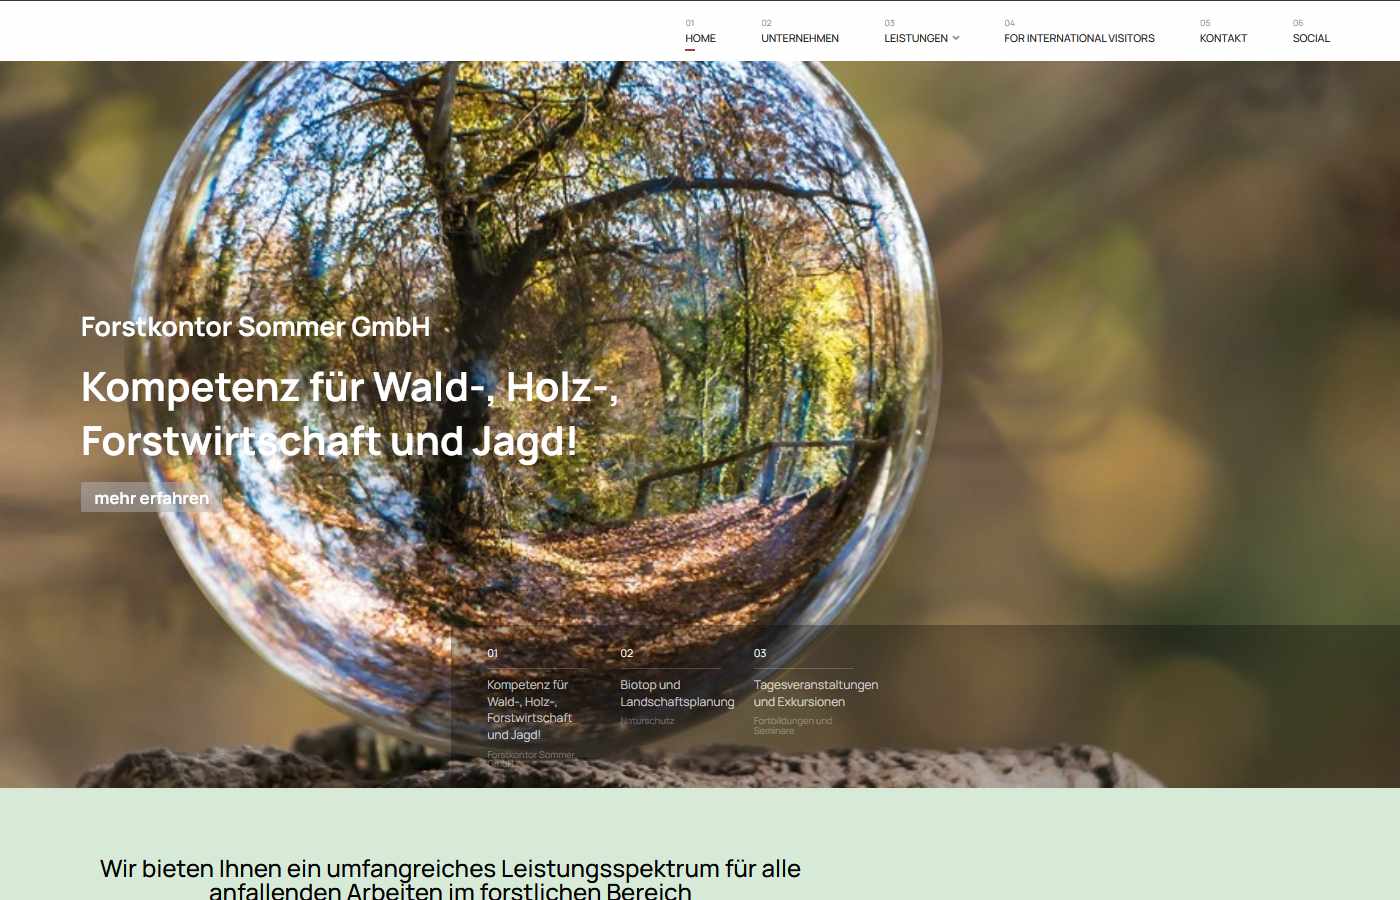 Startseite vom Forstkontor Sommer GmbH